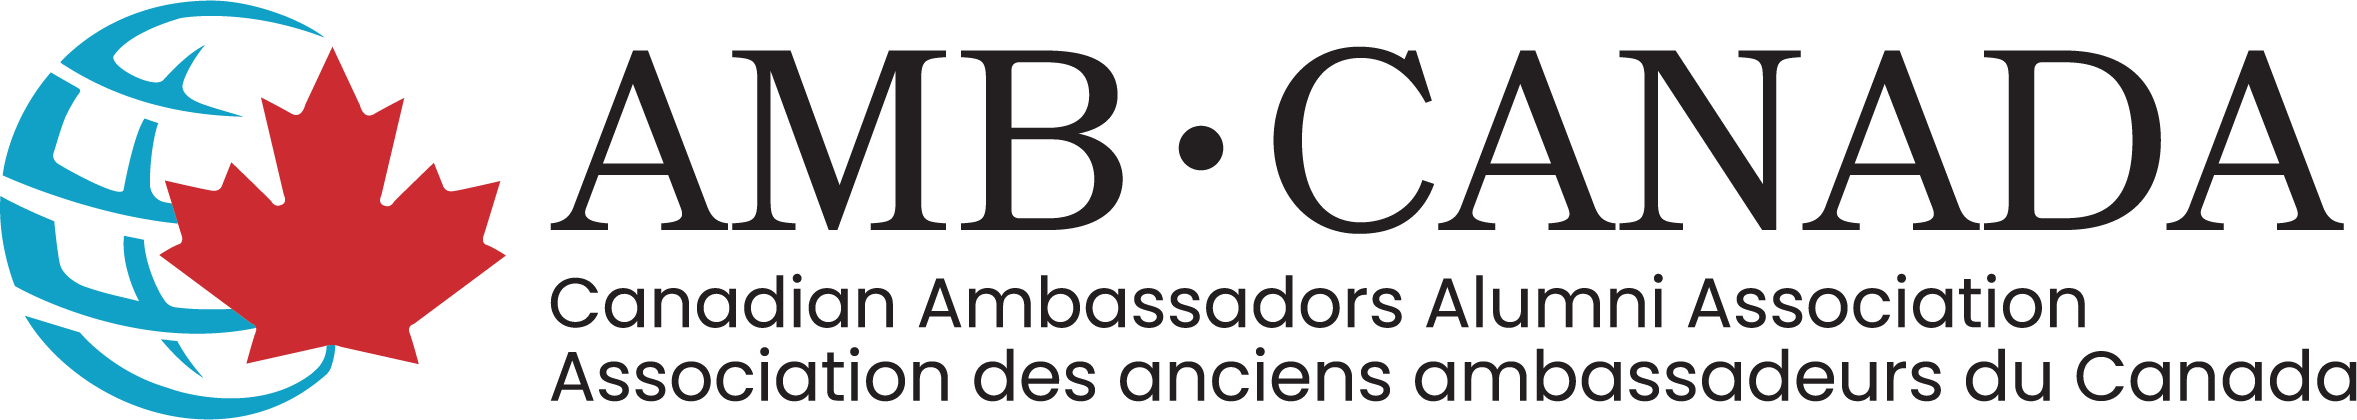 Canadian Ambassadors Alumni Association - AMBCANADA